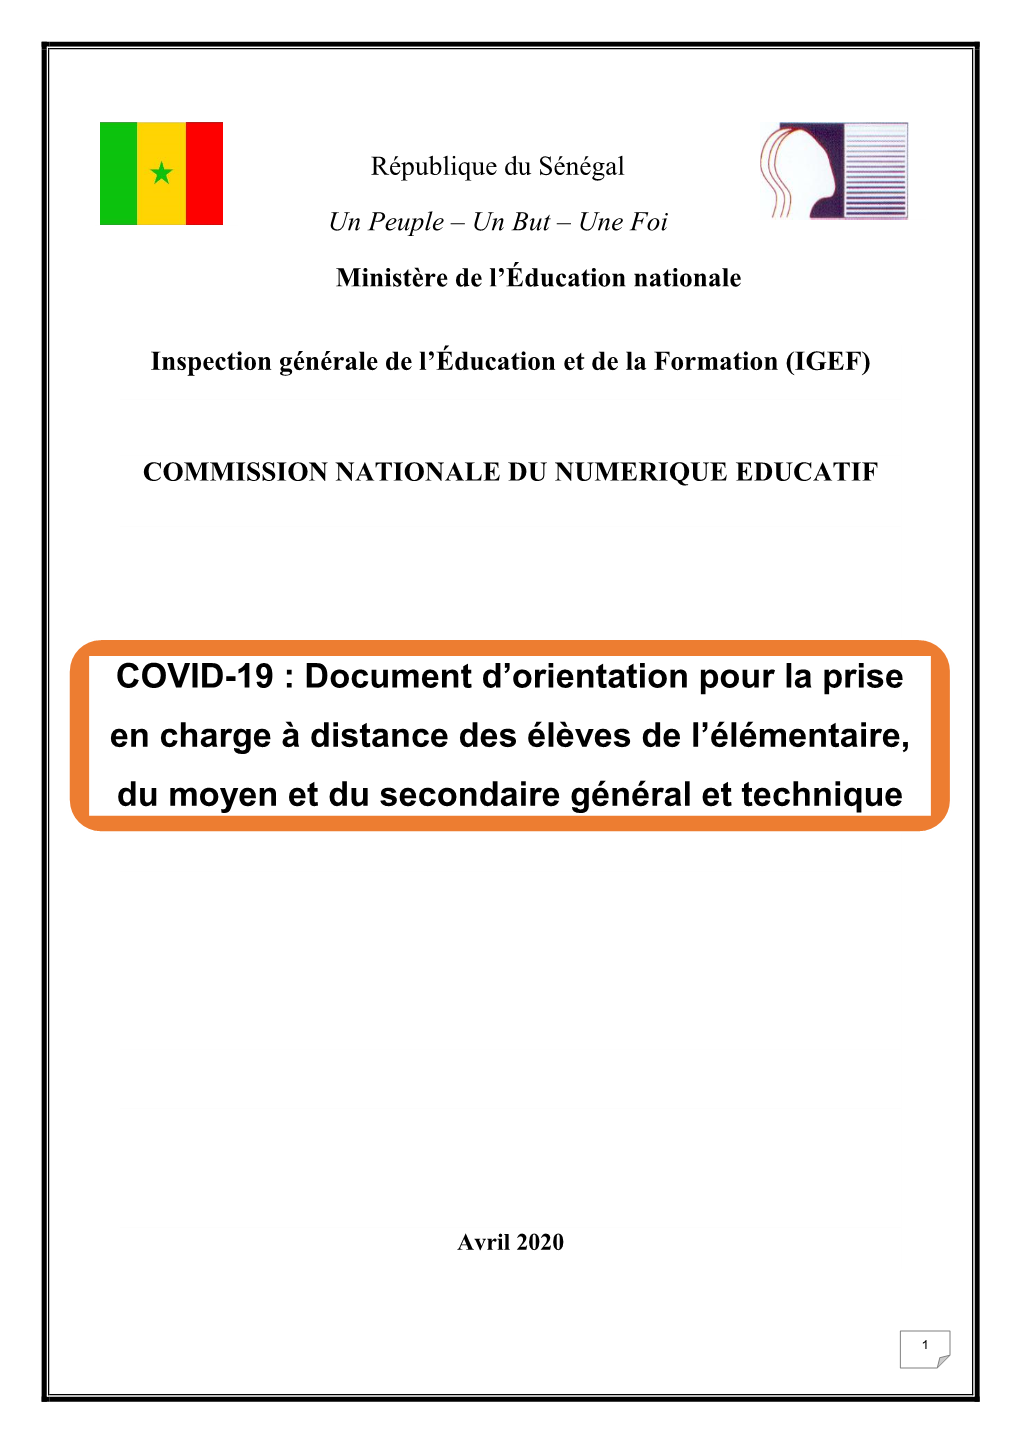 COVID-19 : Document D'orientation Pour La Prise En Charge À Distance Des Élèves De L'élémentaire, Du Moyen Et Du Second